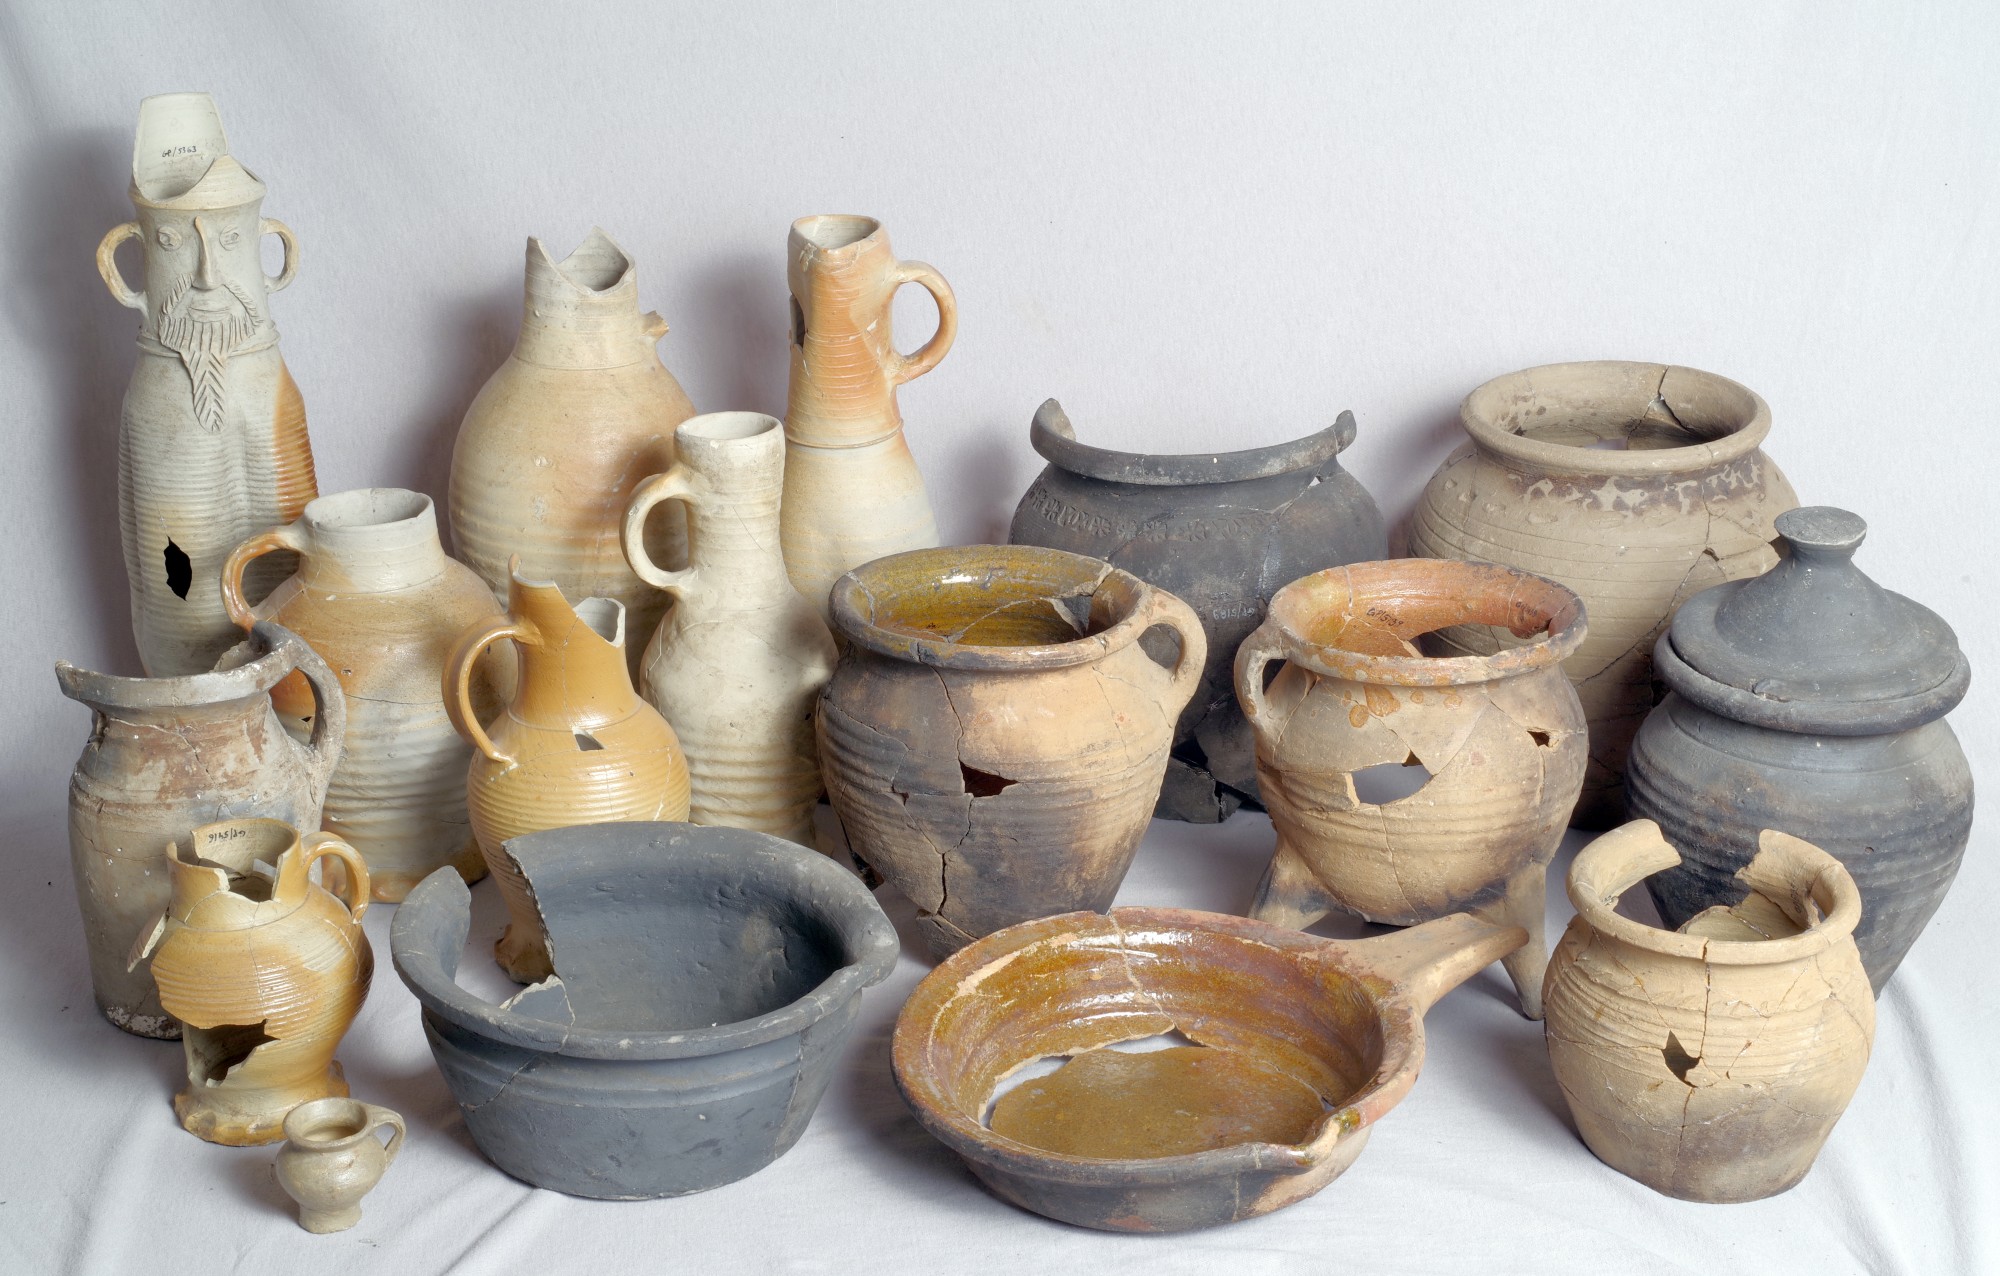 Asortyment naczyń ceramicznych z latryny na zapleczu działki Długi Targ 21 © M. Starski, na licencji CC-BY-SA 4.0